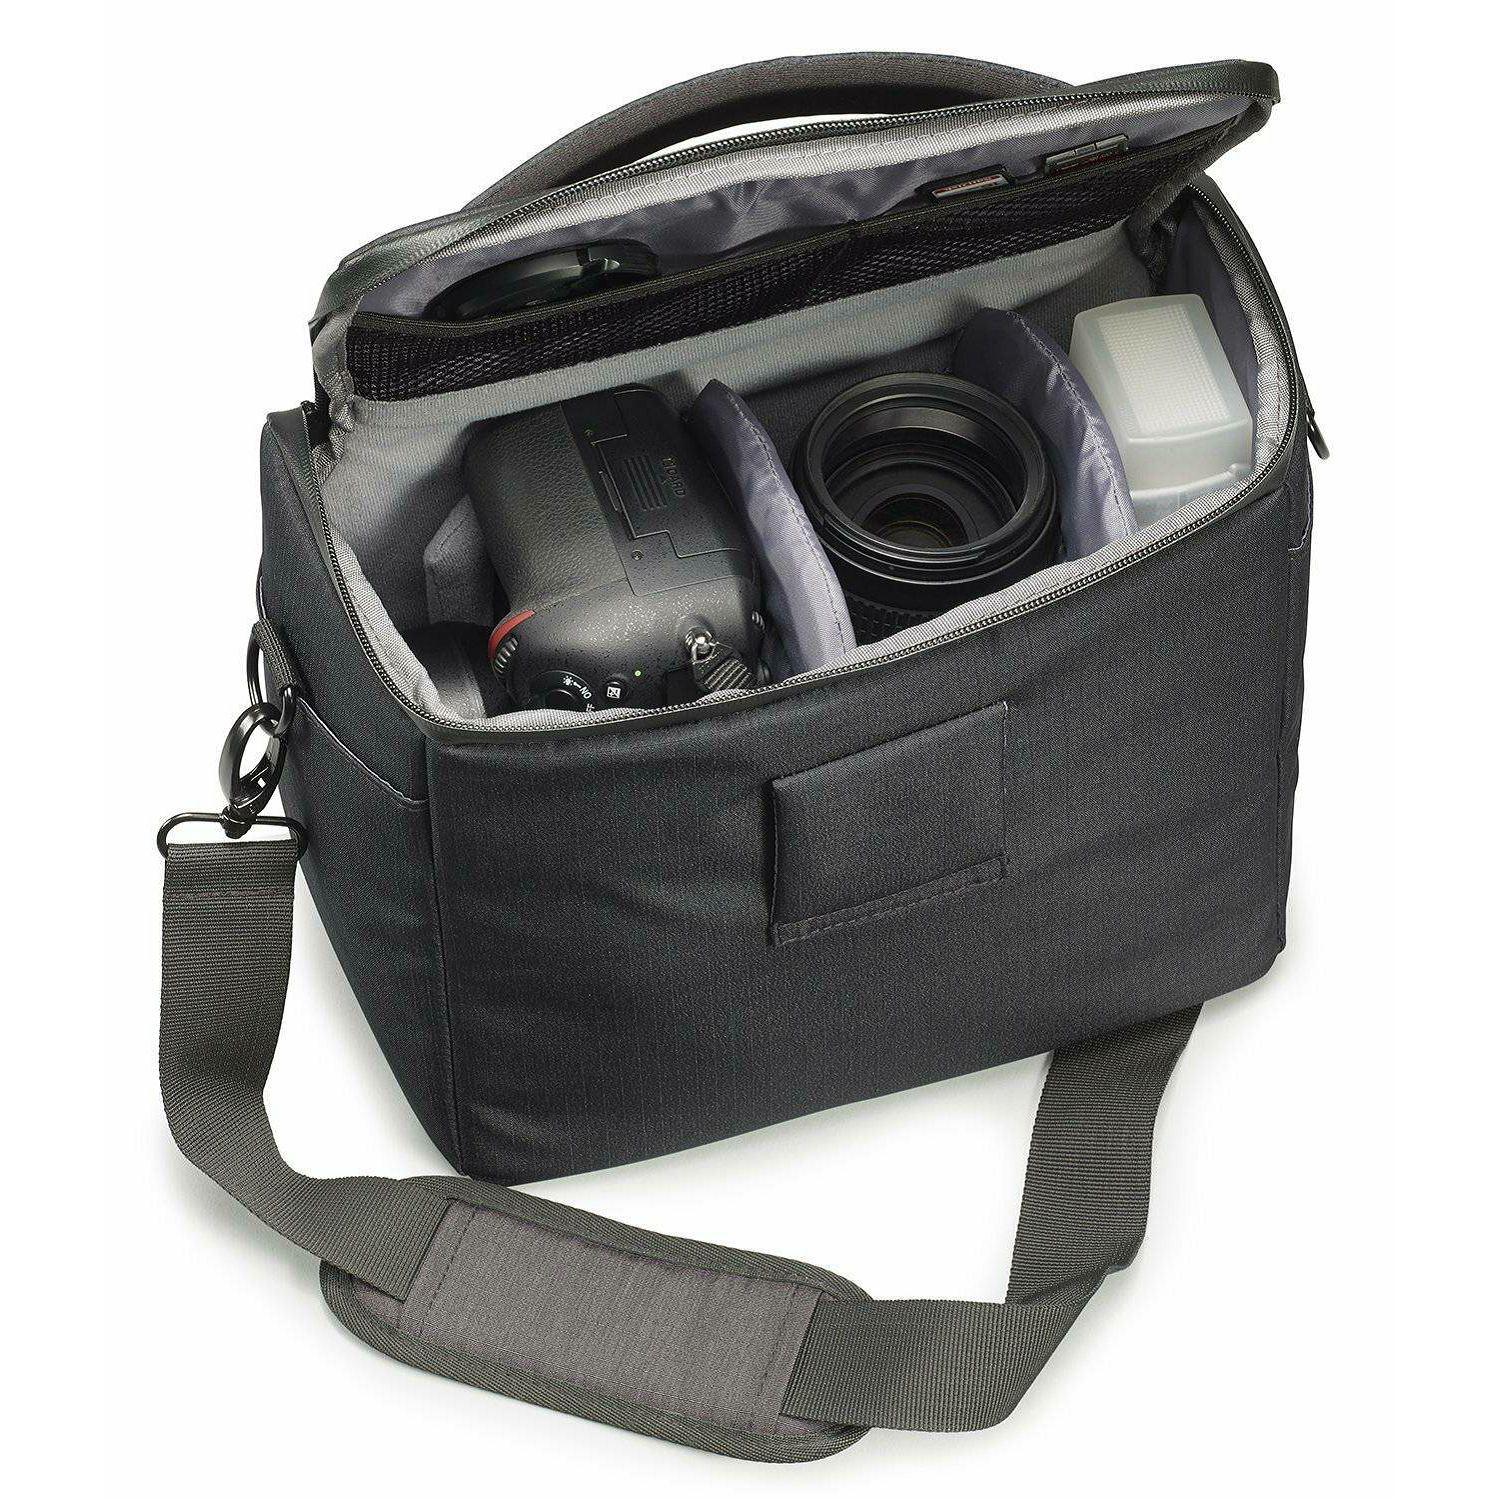 Cullmann Malaga Maxima 300 Black crna torba za DSLR fotoaparat i foto opremu 250x200x130mm 426g (90420)